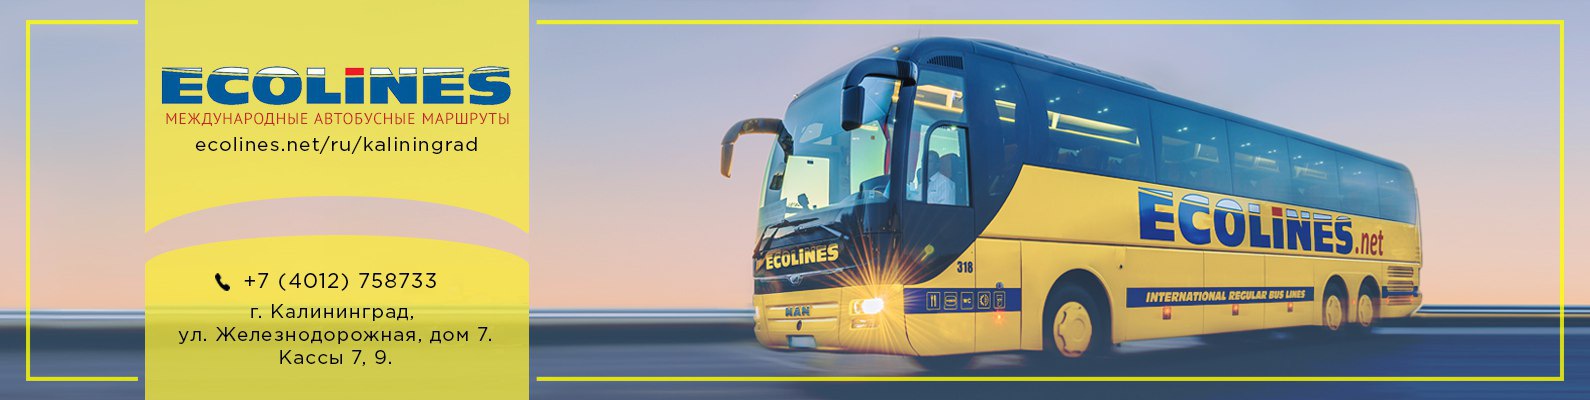 Автобусы эколайнс (ecolines) - акции и лайфхаки